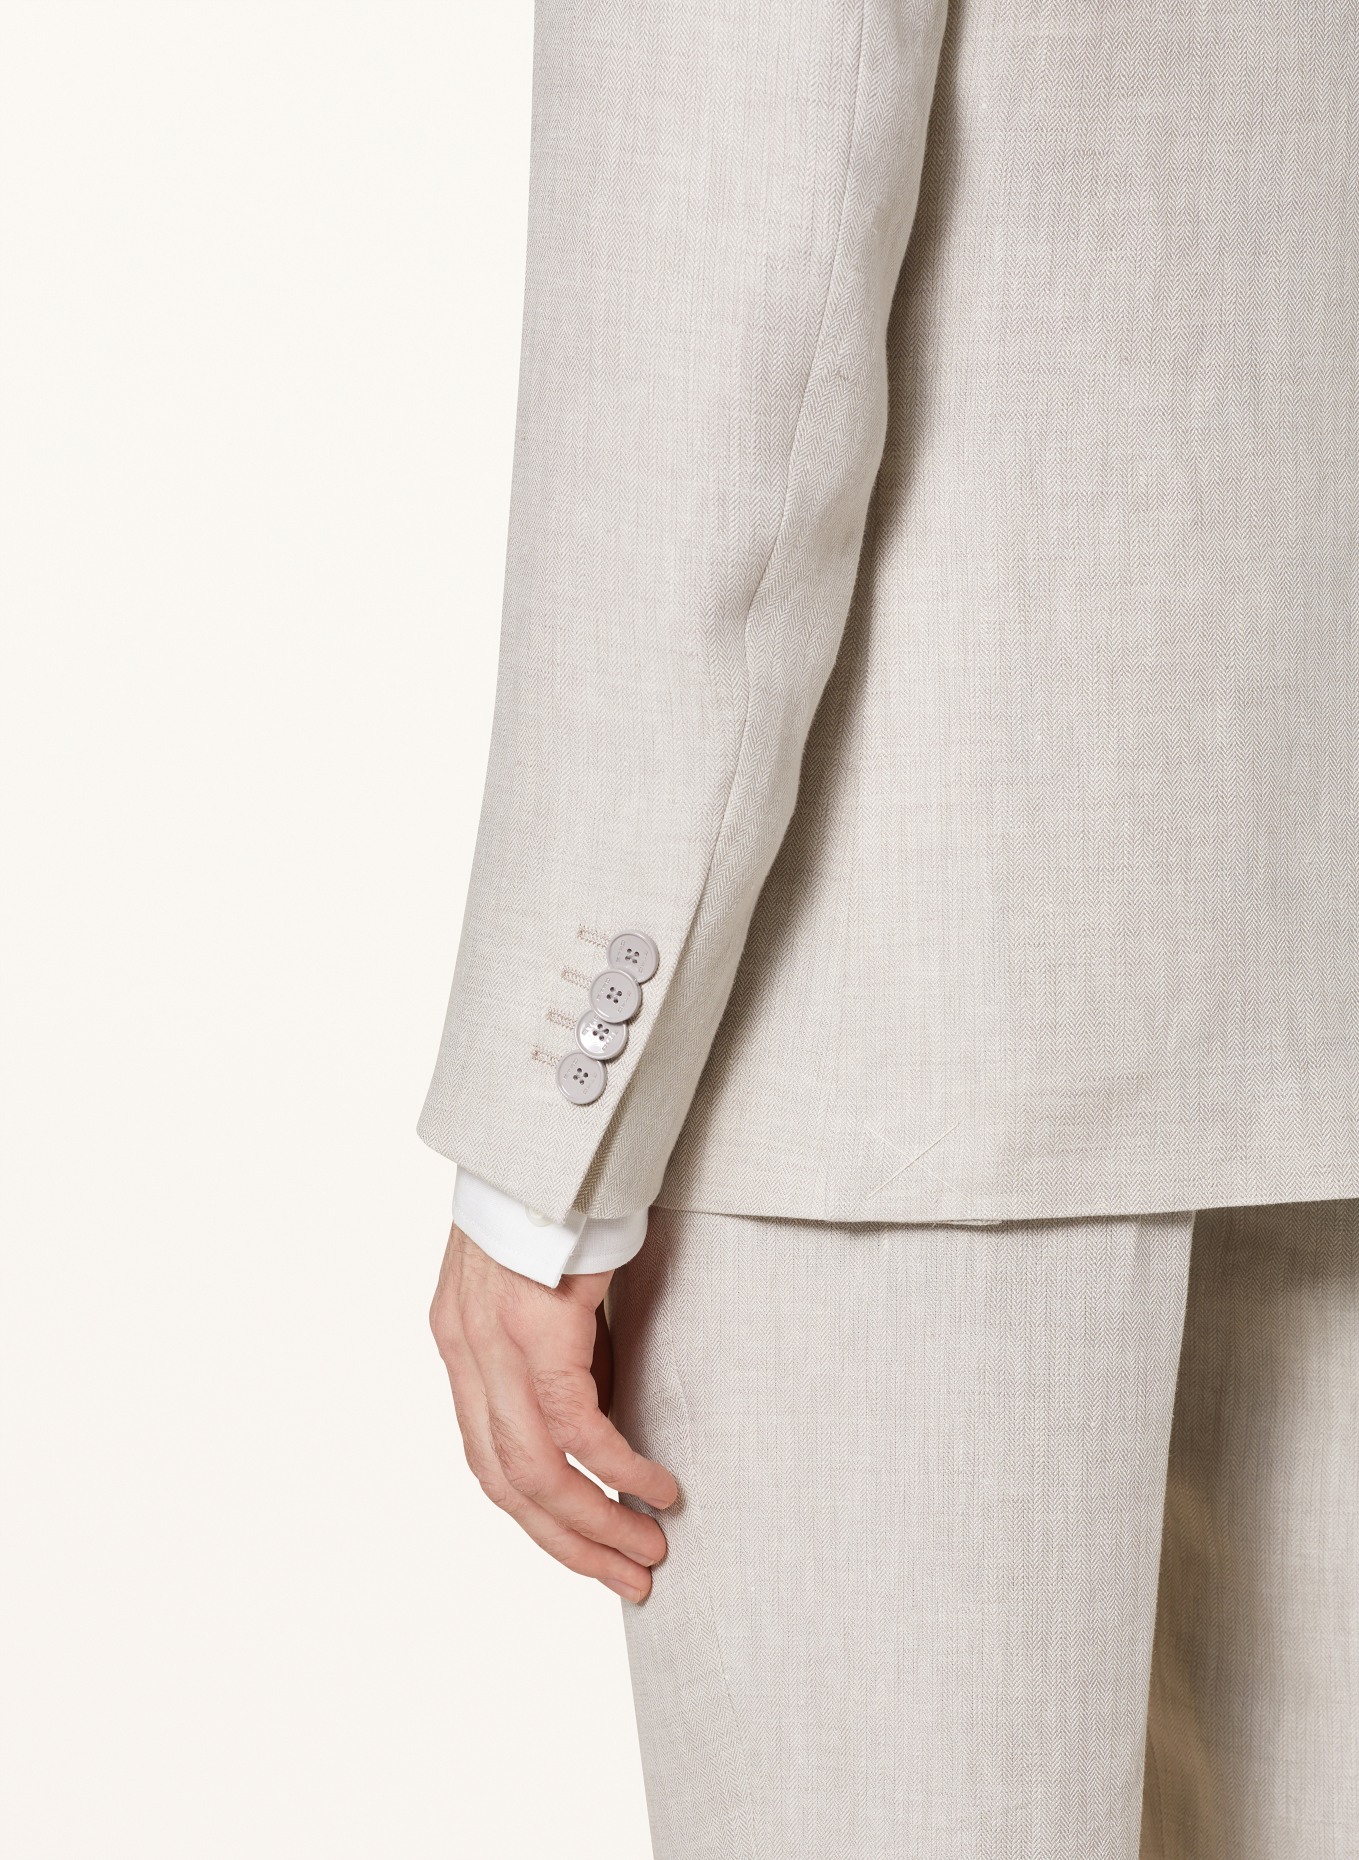 ETRO Suit jacket slim fit in linen, Color: M0633 Light Beige (Image 6)